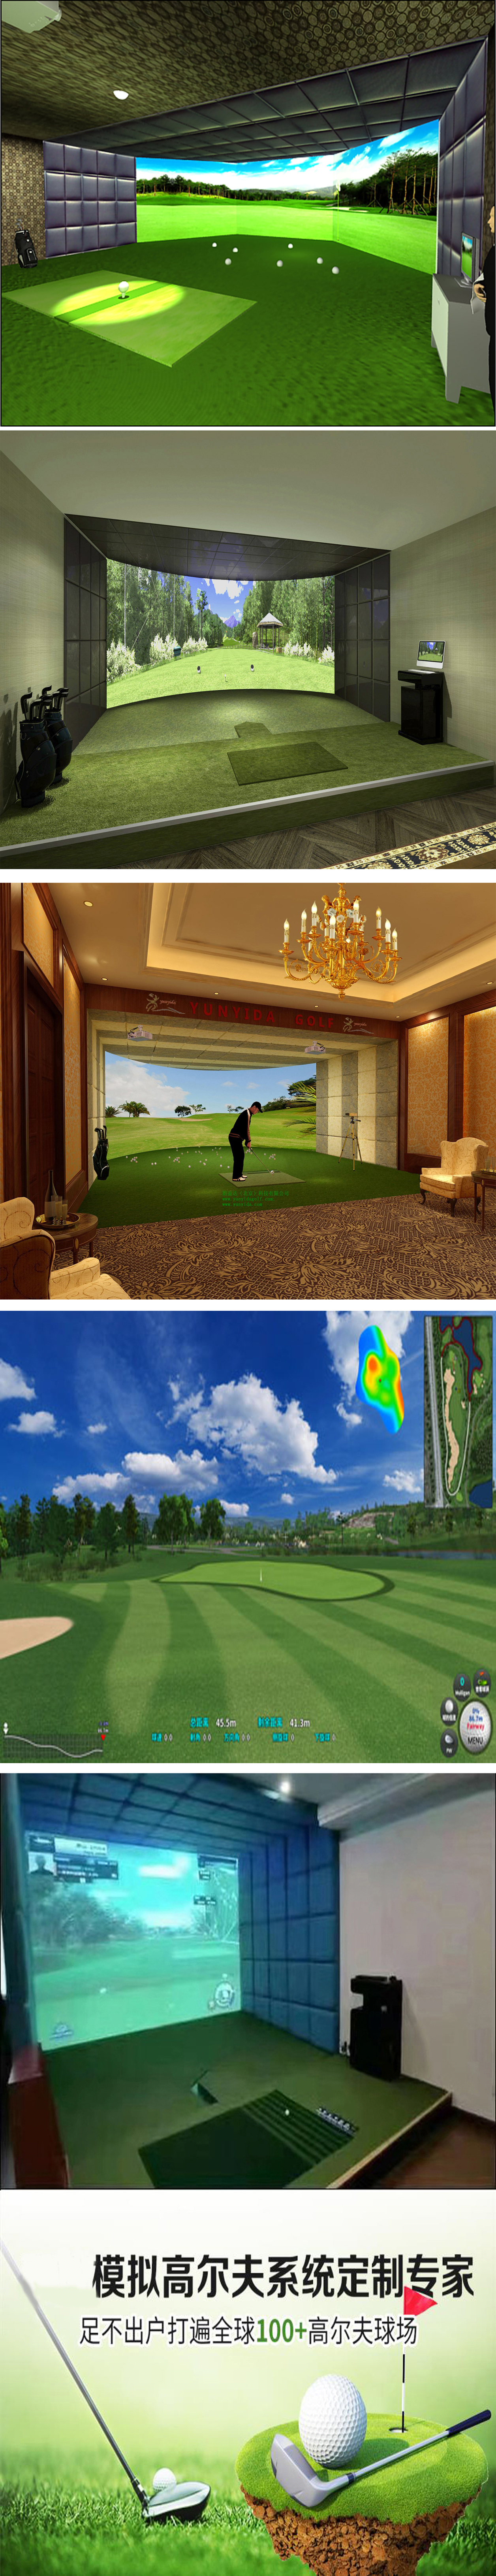 模拟室内高尔夫练习  一.jpg